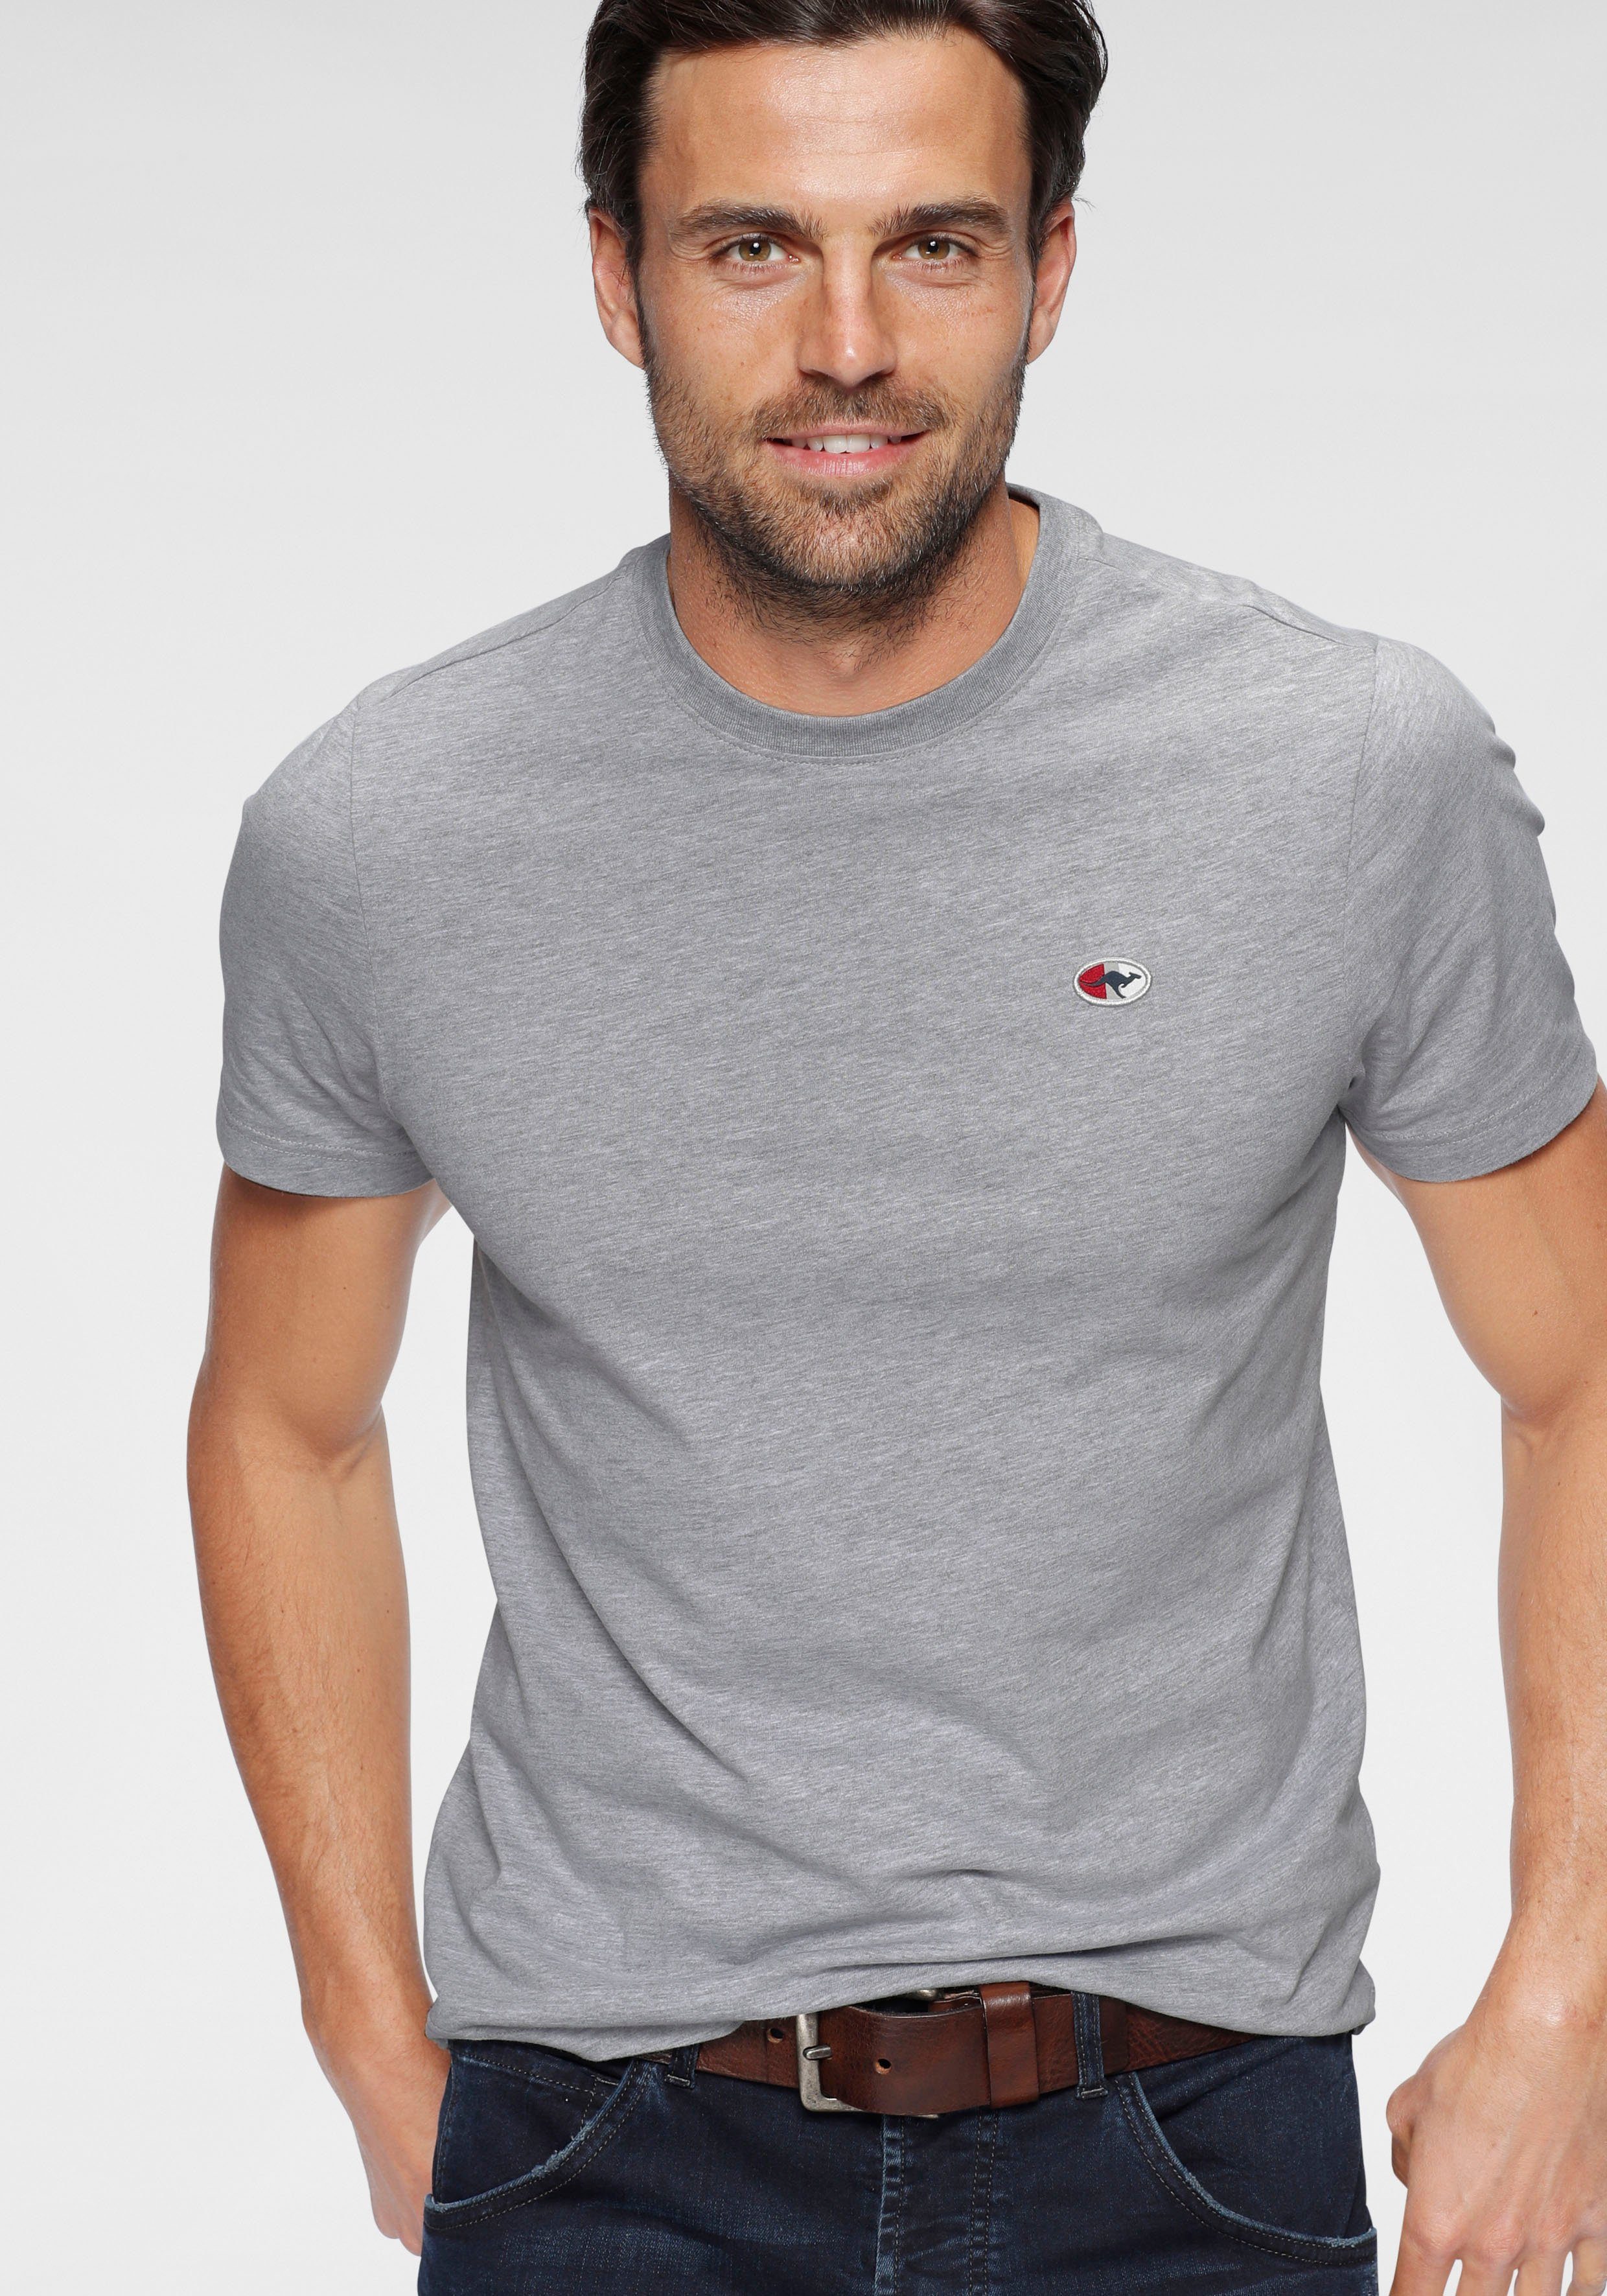 KangaROOS T-Shirt unifarben grau-meliert